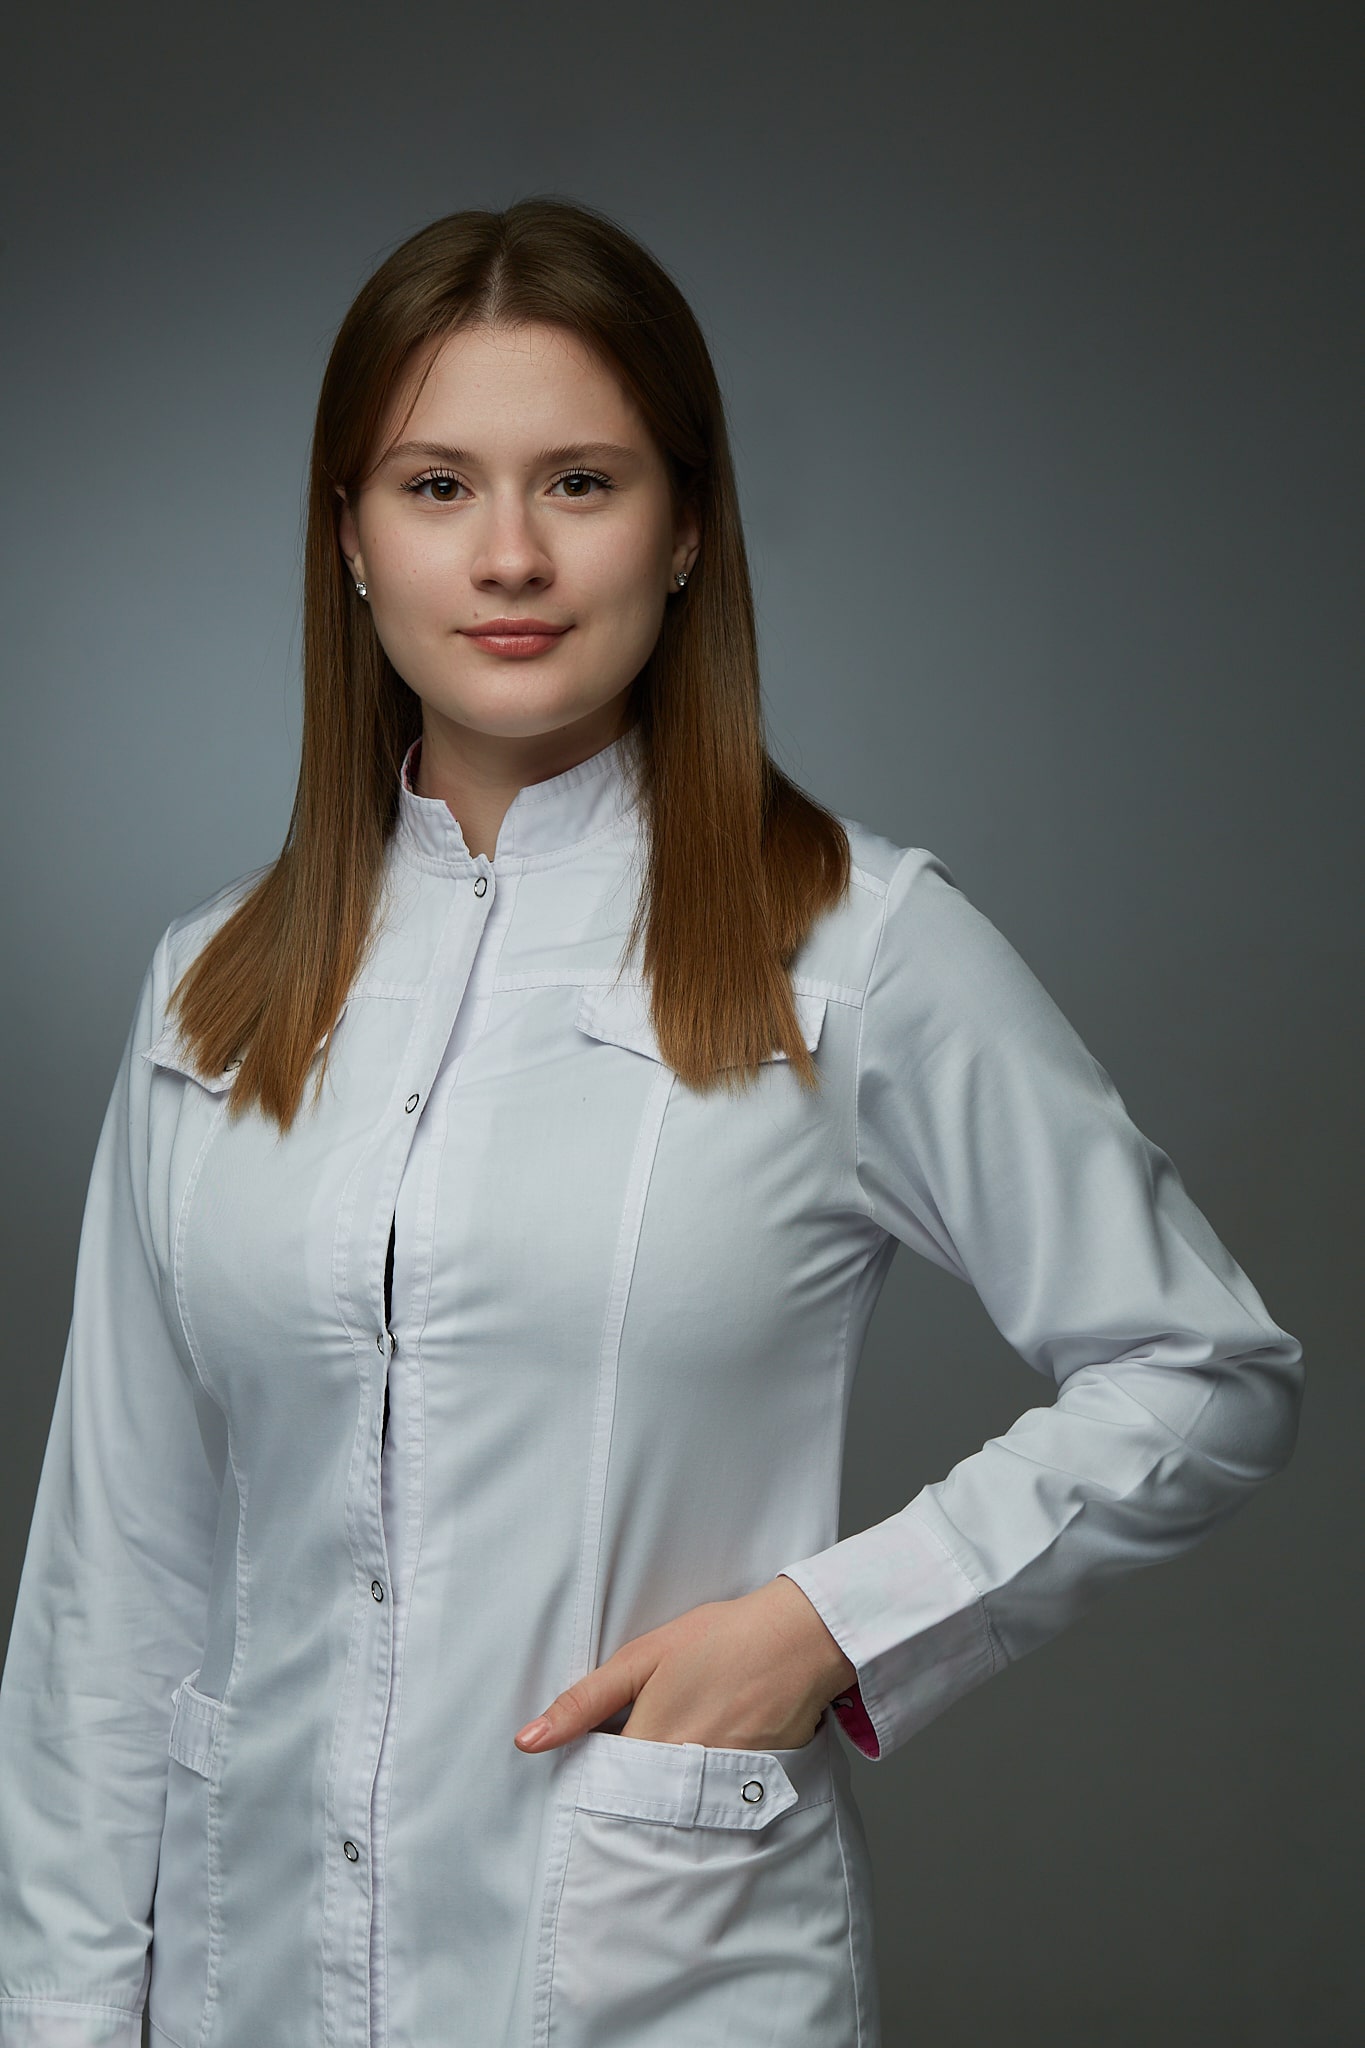 Козлова Полина Борисовна